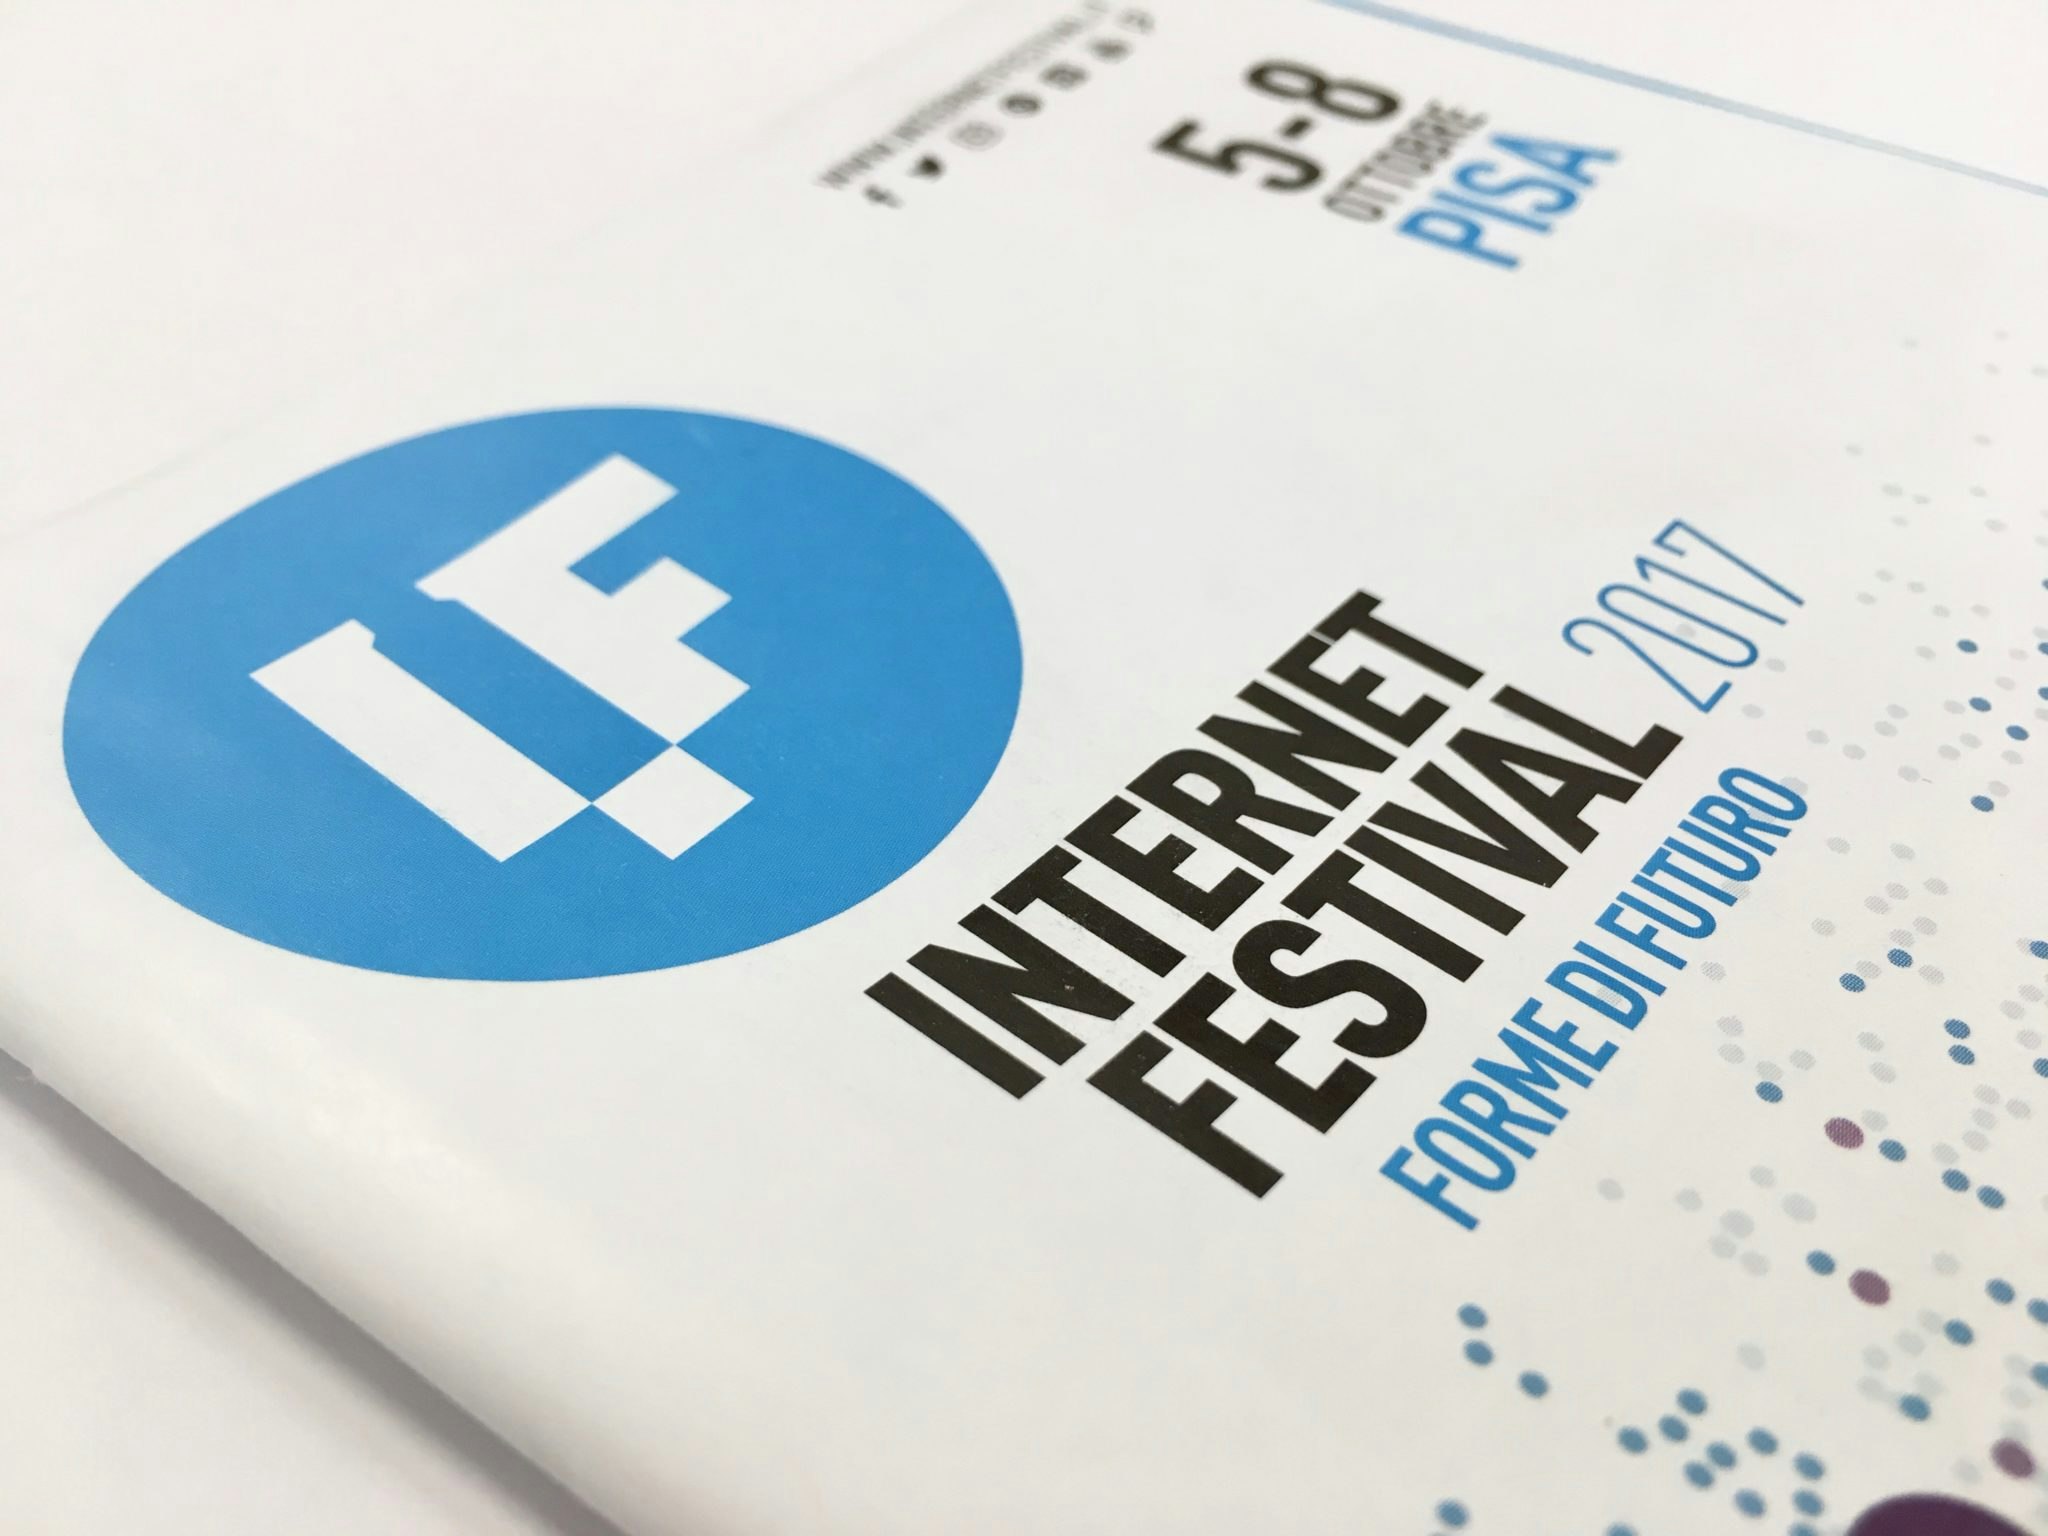 Internet Festival Pisa 2017 - Progettazione booklet